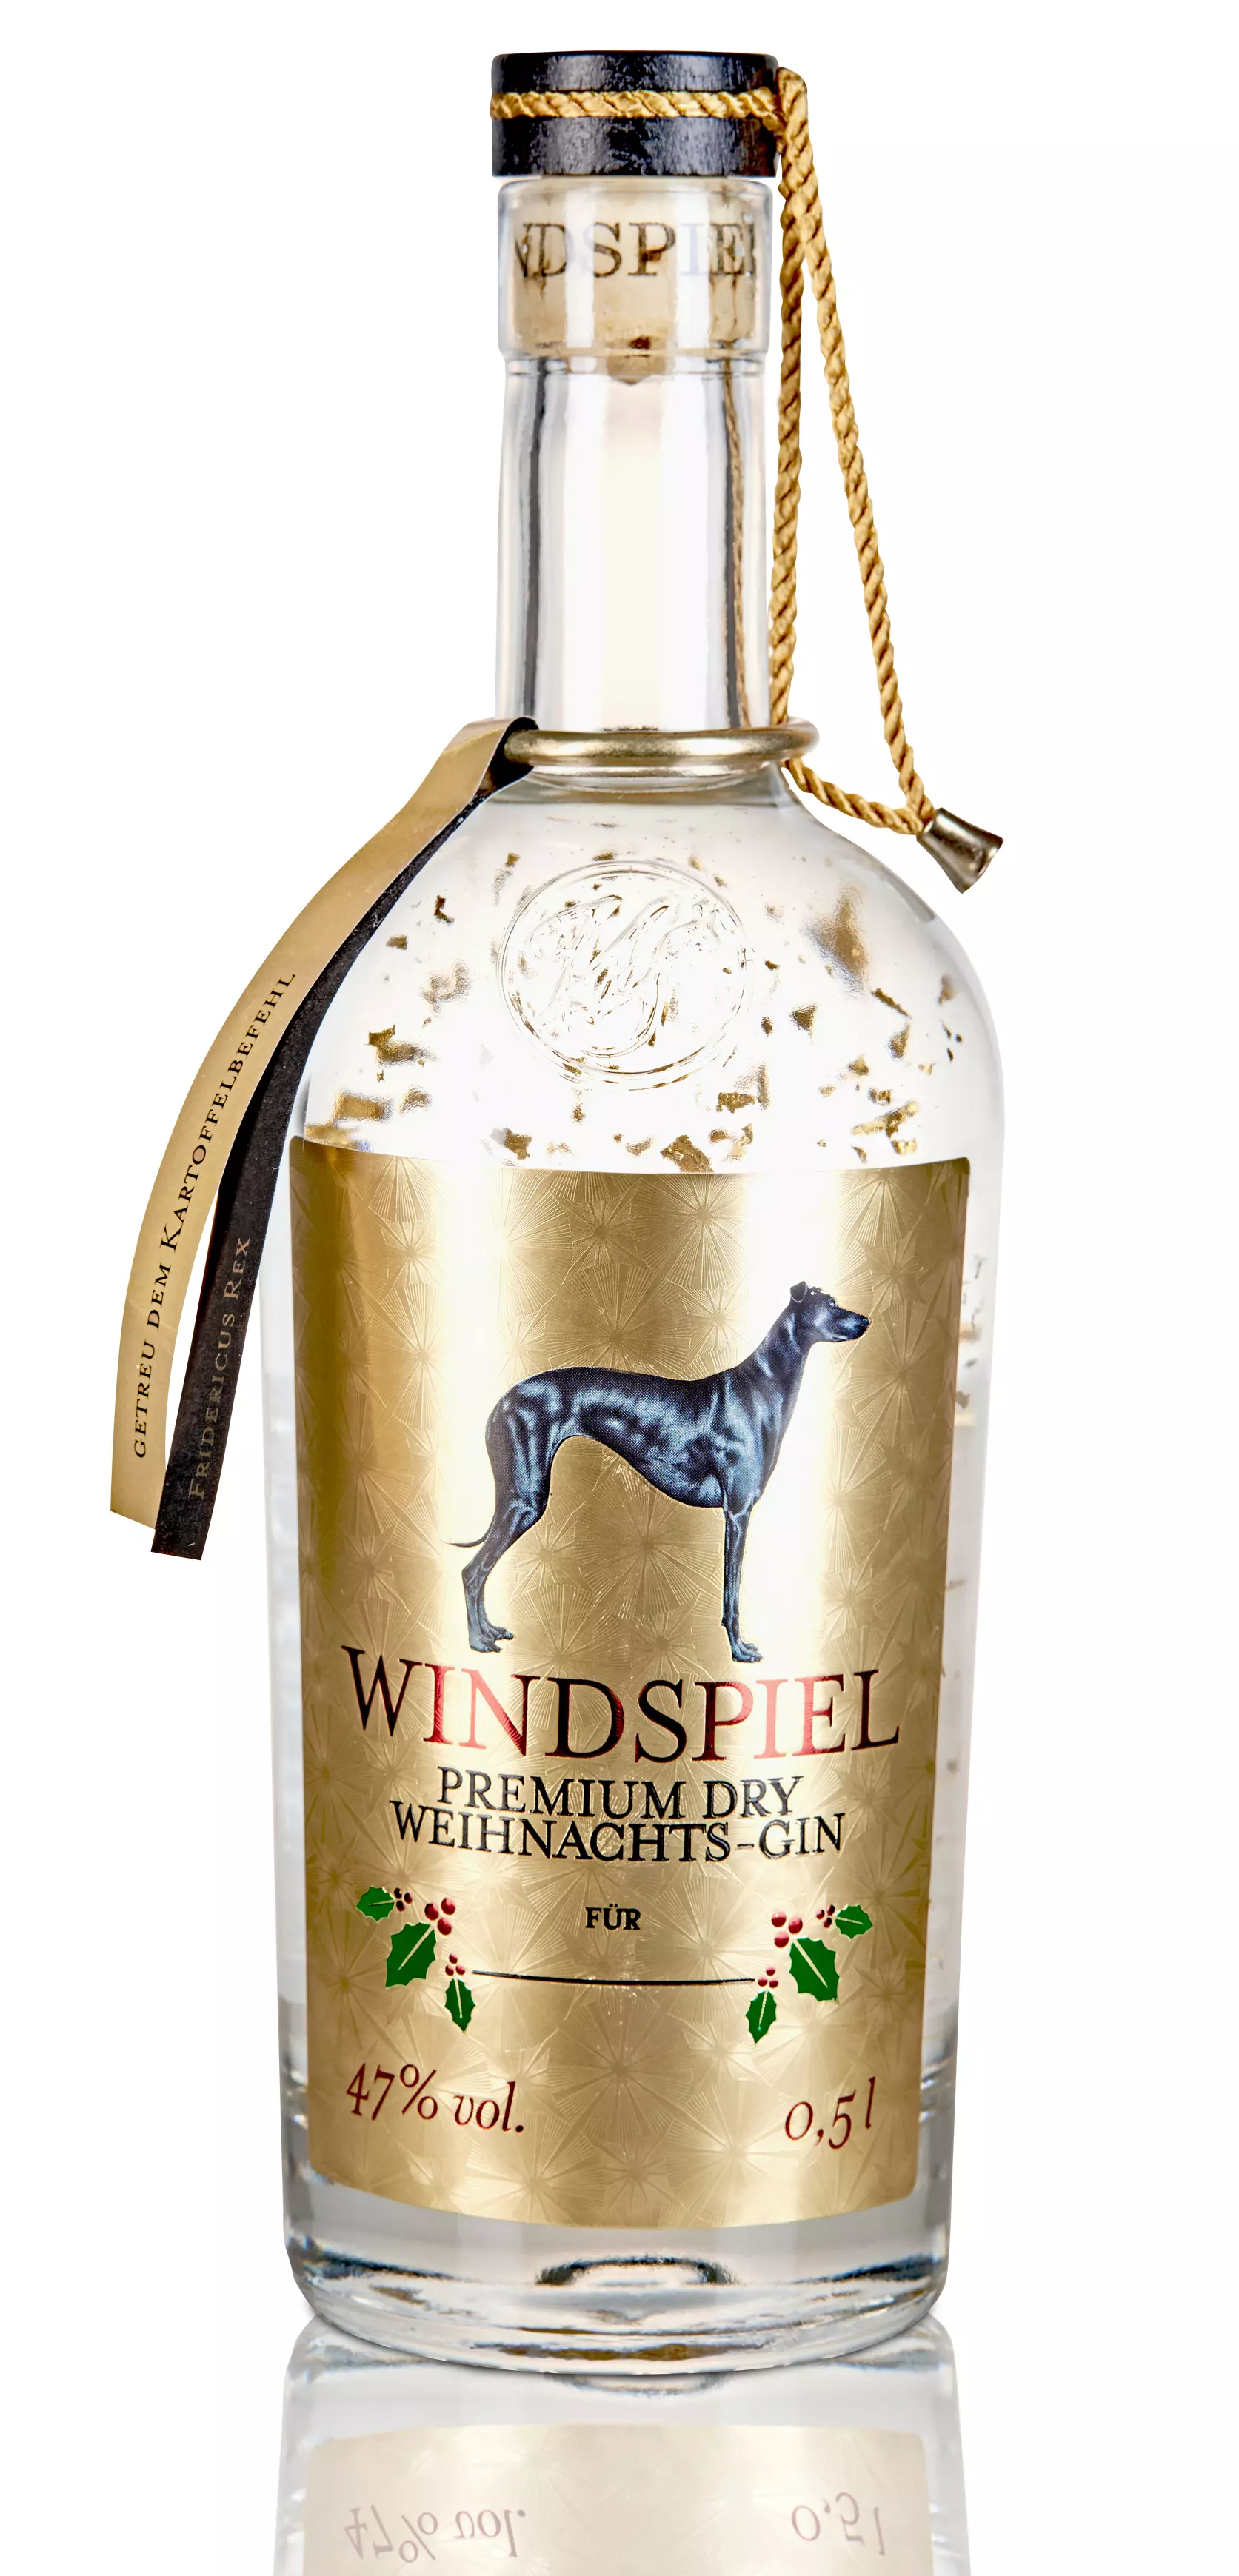 Windspiel Premium Dry Gin Weihnachts-Edition 47% vol. 0,5l